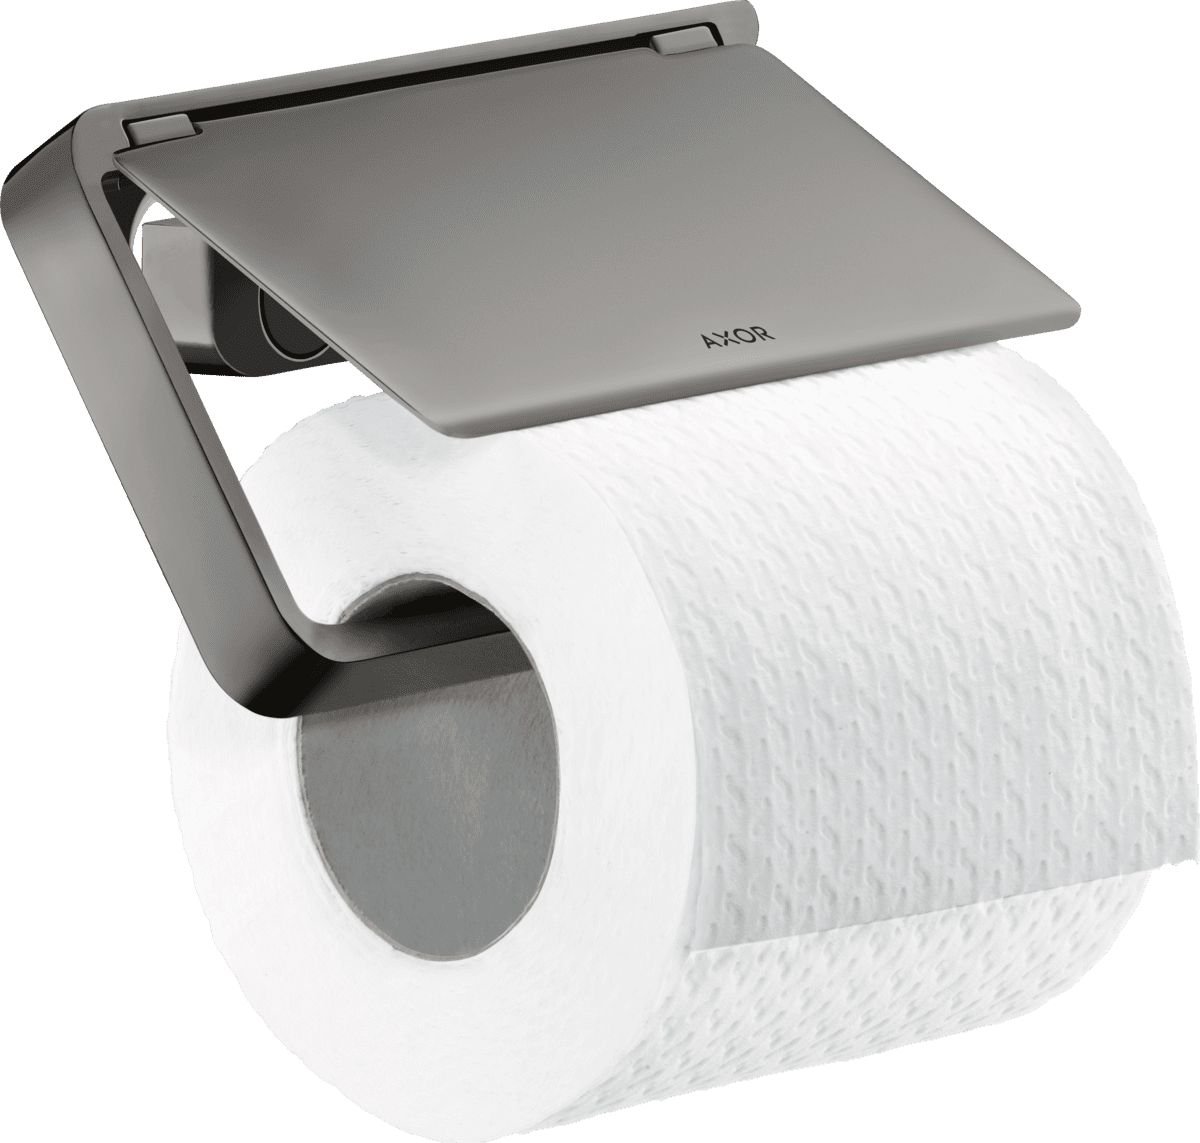 εικόνα του HANSGROHE AXOR Universal Softsquare Toilet paper holder with cover #42836330 - Polished Black Chrome